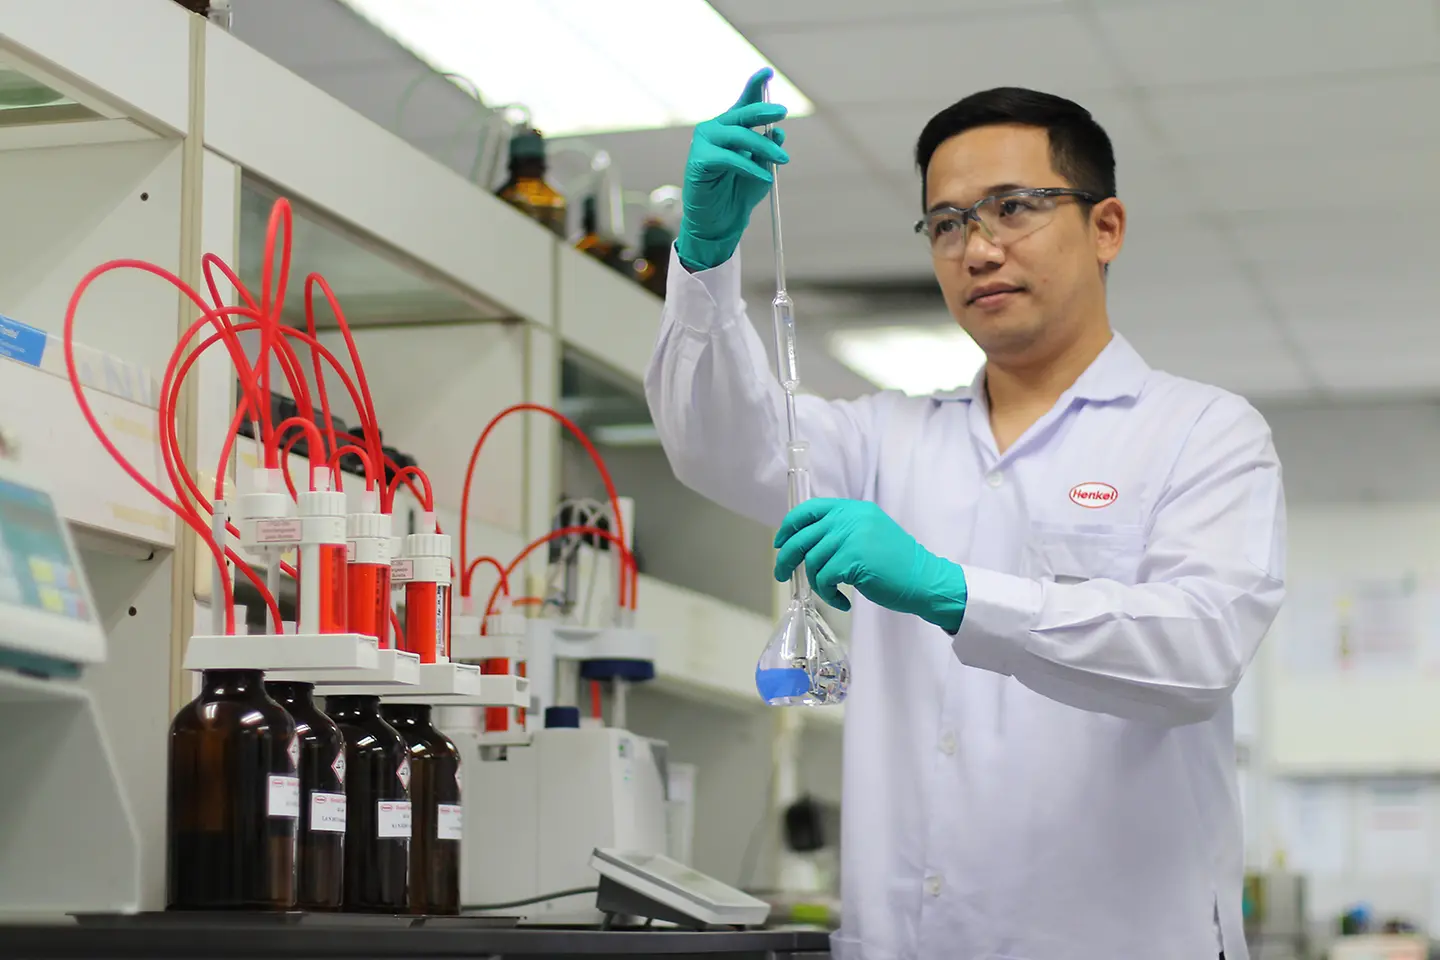 พนักงานกำลังทำการทดสอบผลิตภัณฑ์ในห้องปฏิบัติการที่โรงงานเทคโนโลยีกาวของเฮงเค็ล ในบางปะกง จังหวัดชลบุรี